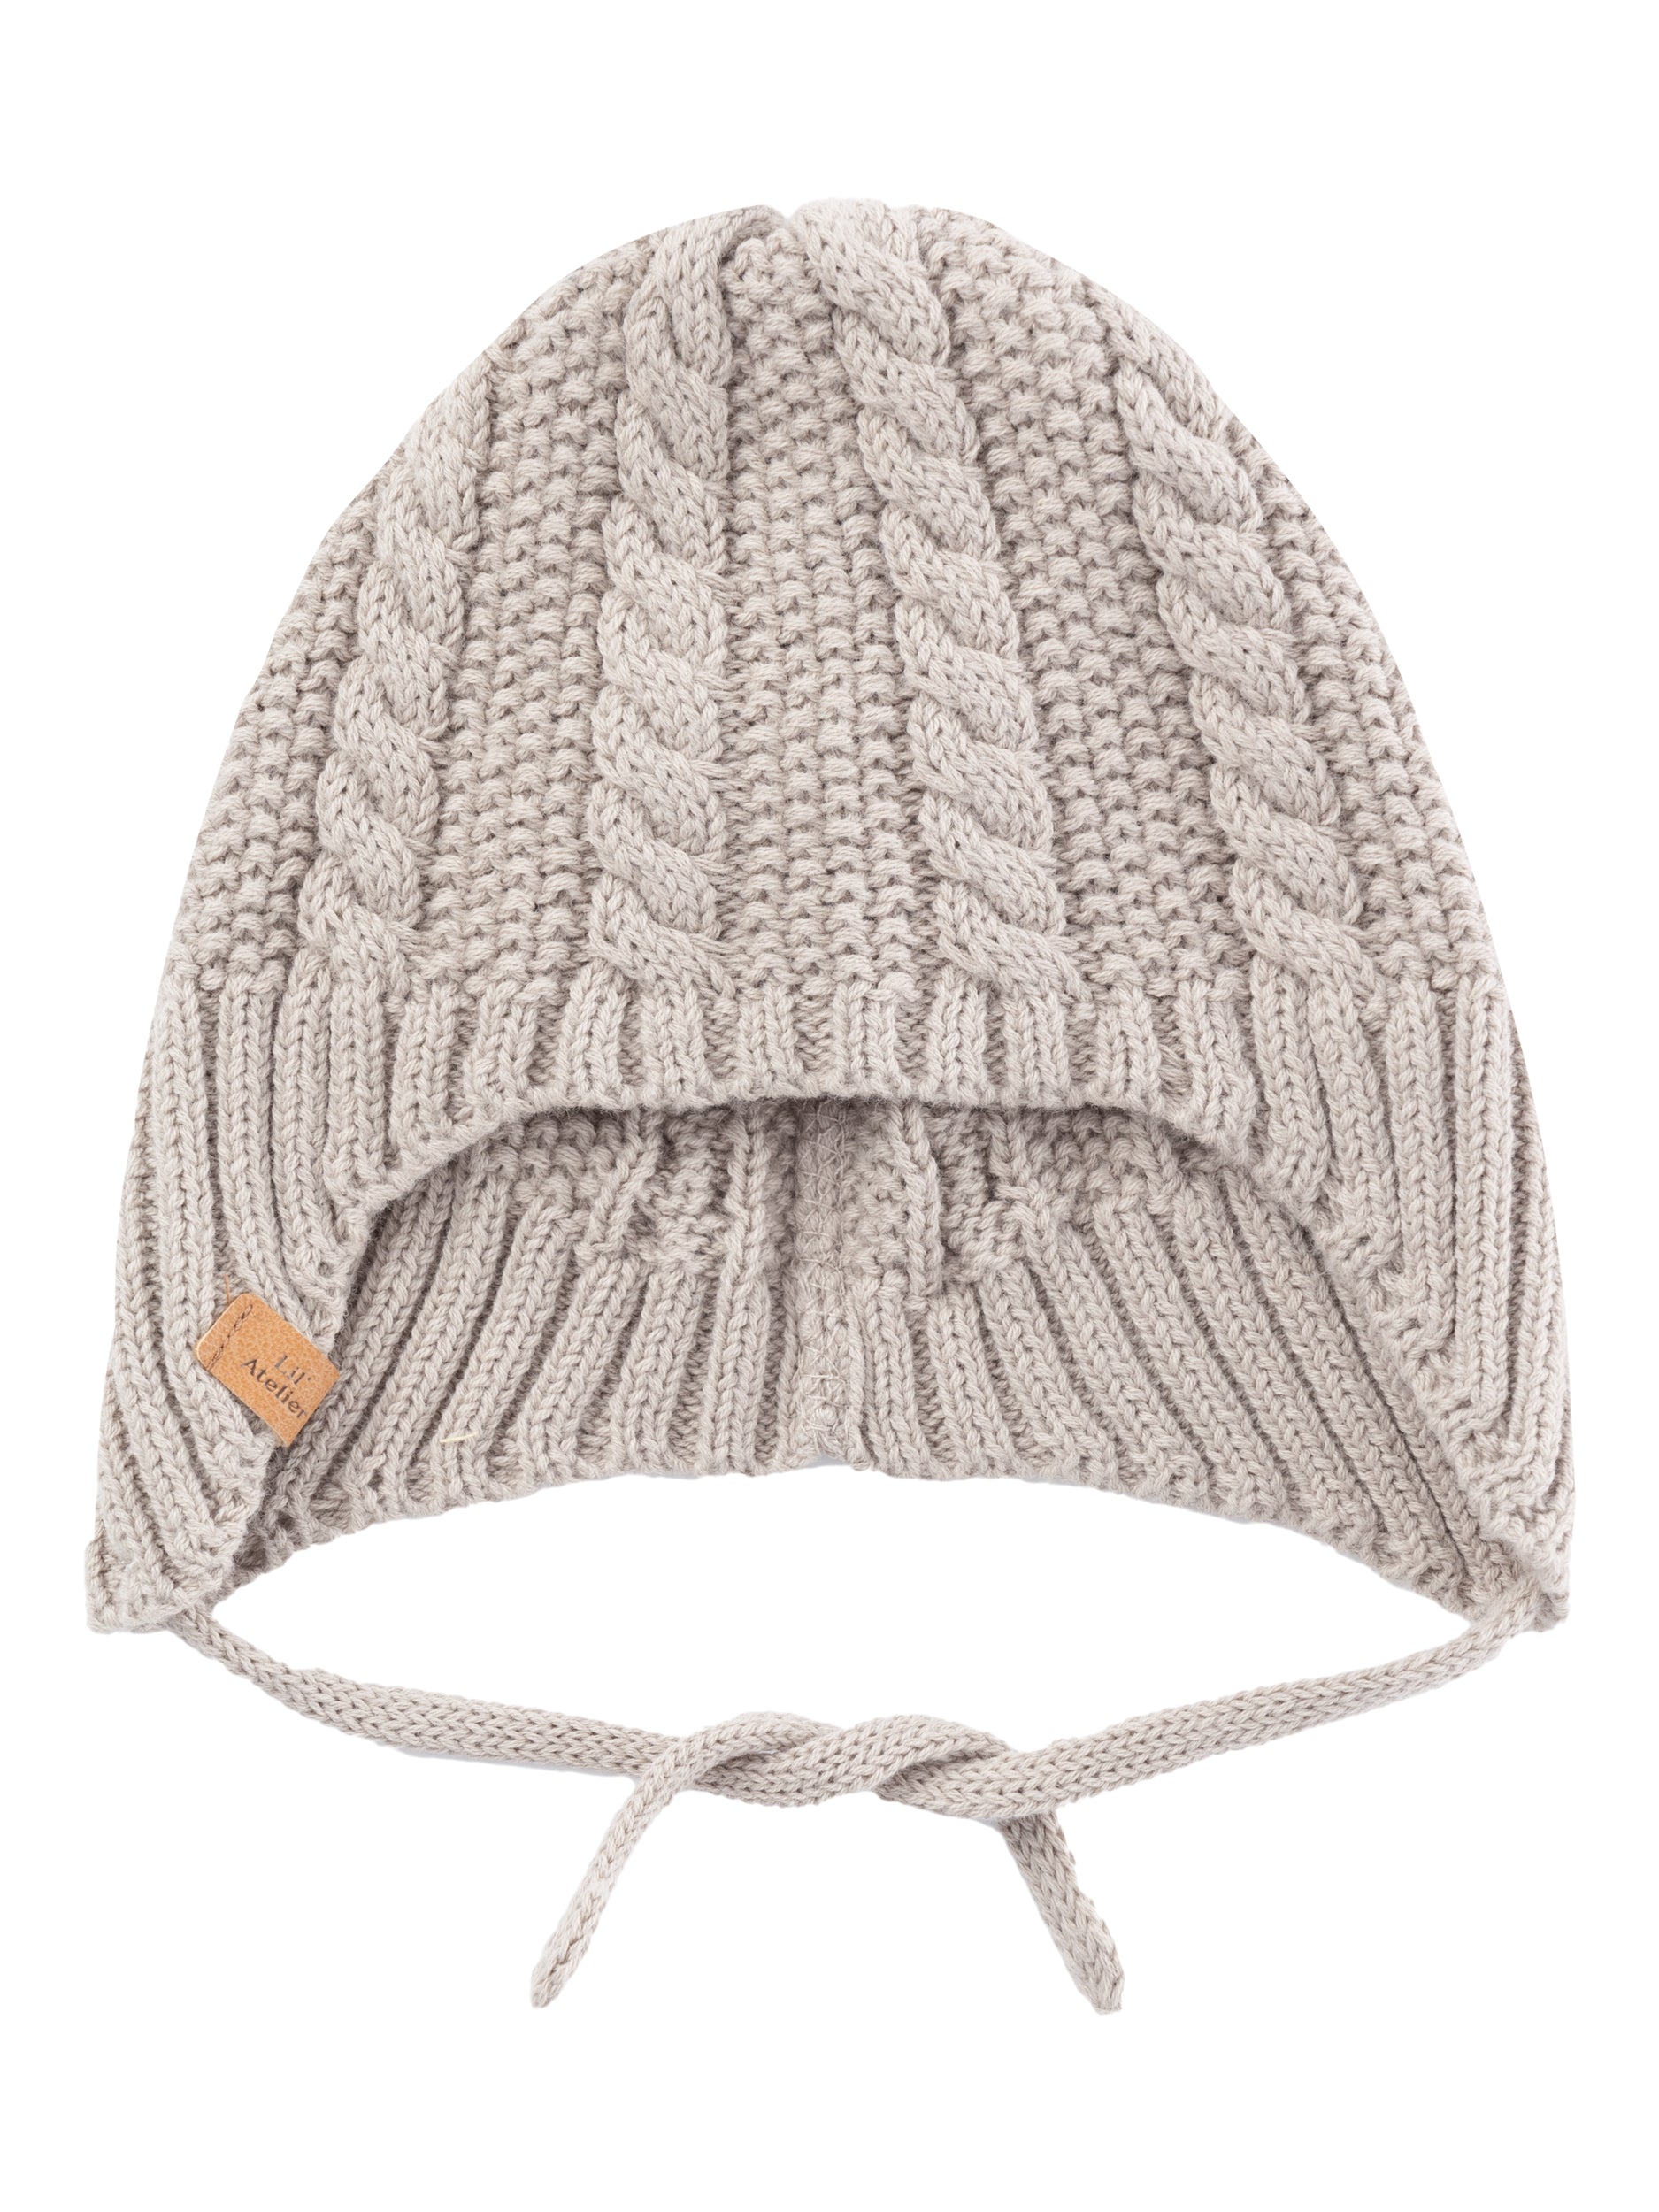 Lil Atelier Daio Knit Hat - Pure Cashmere